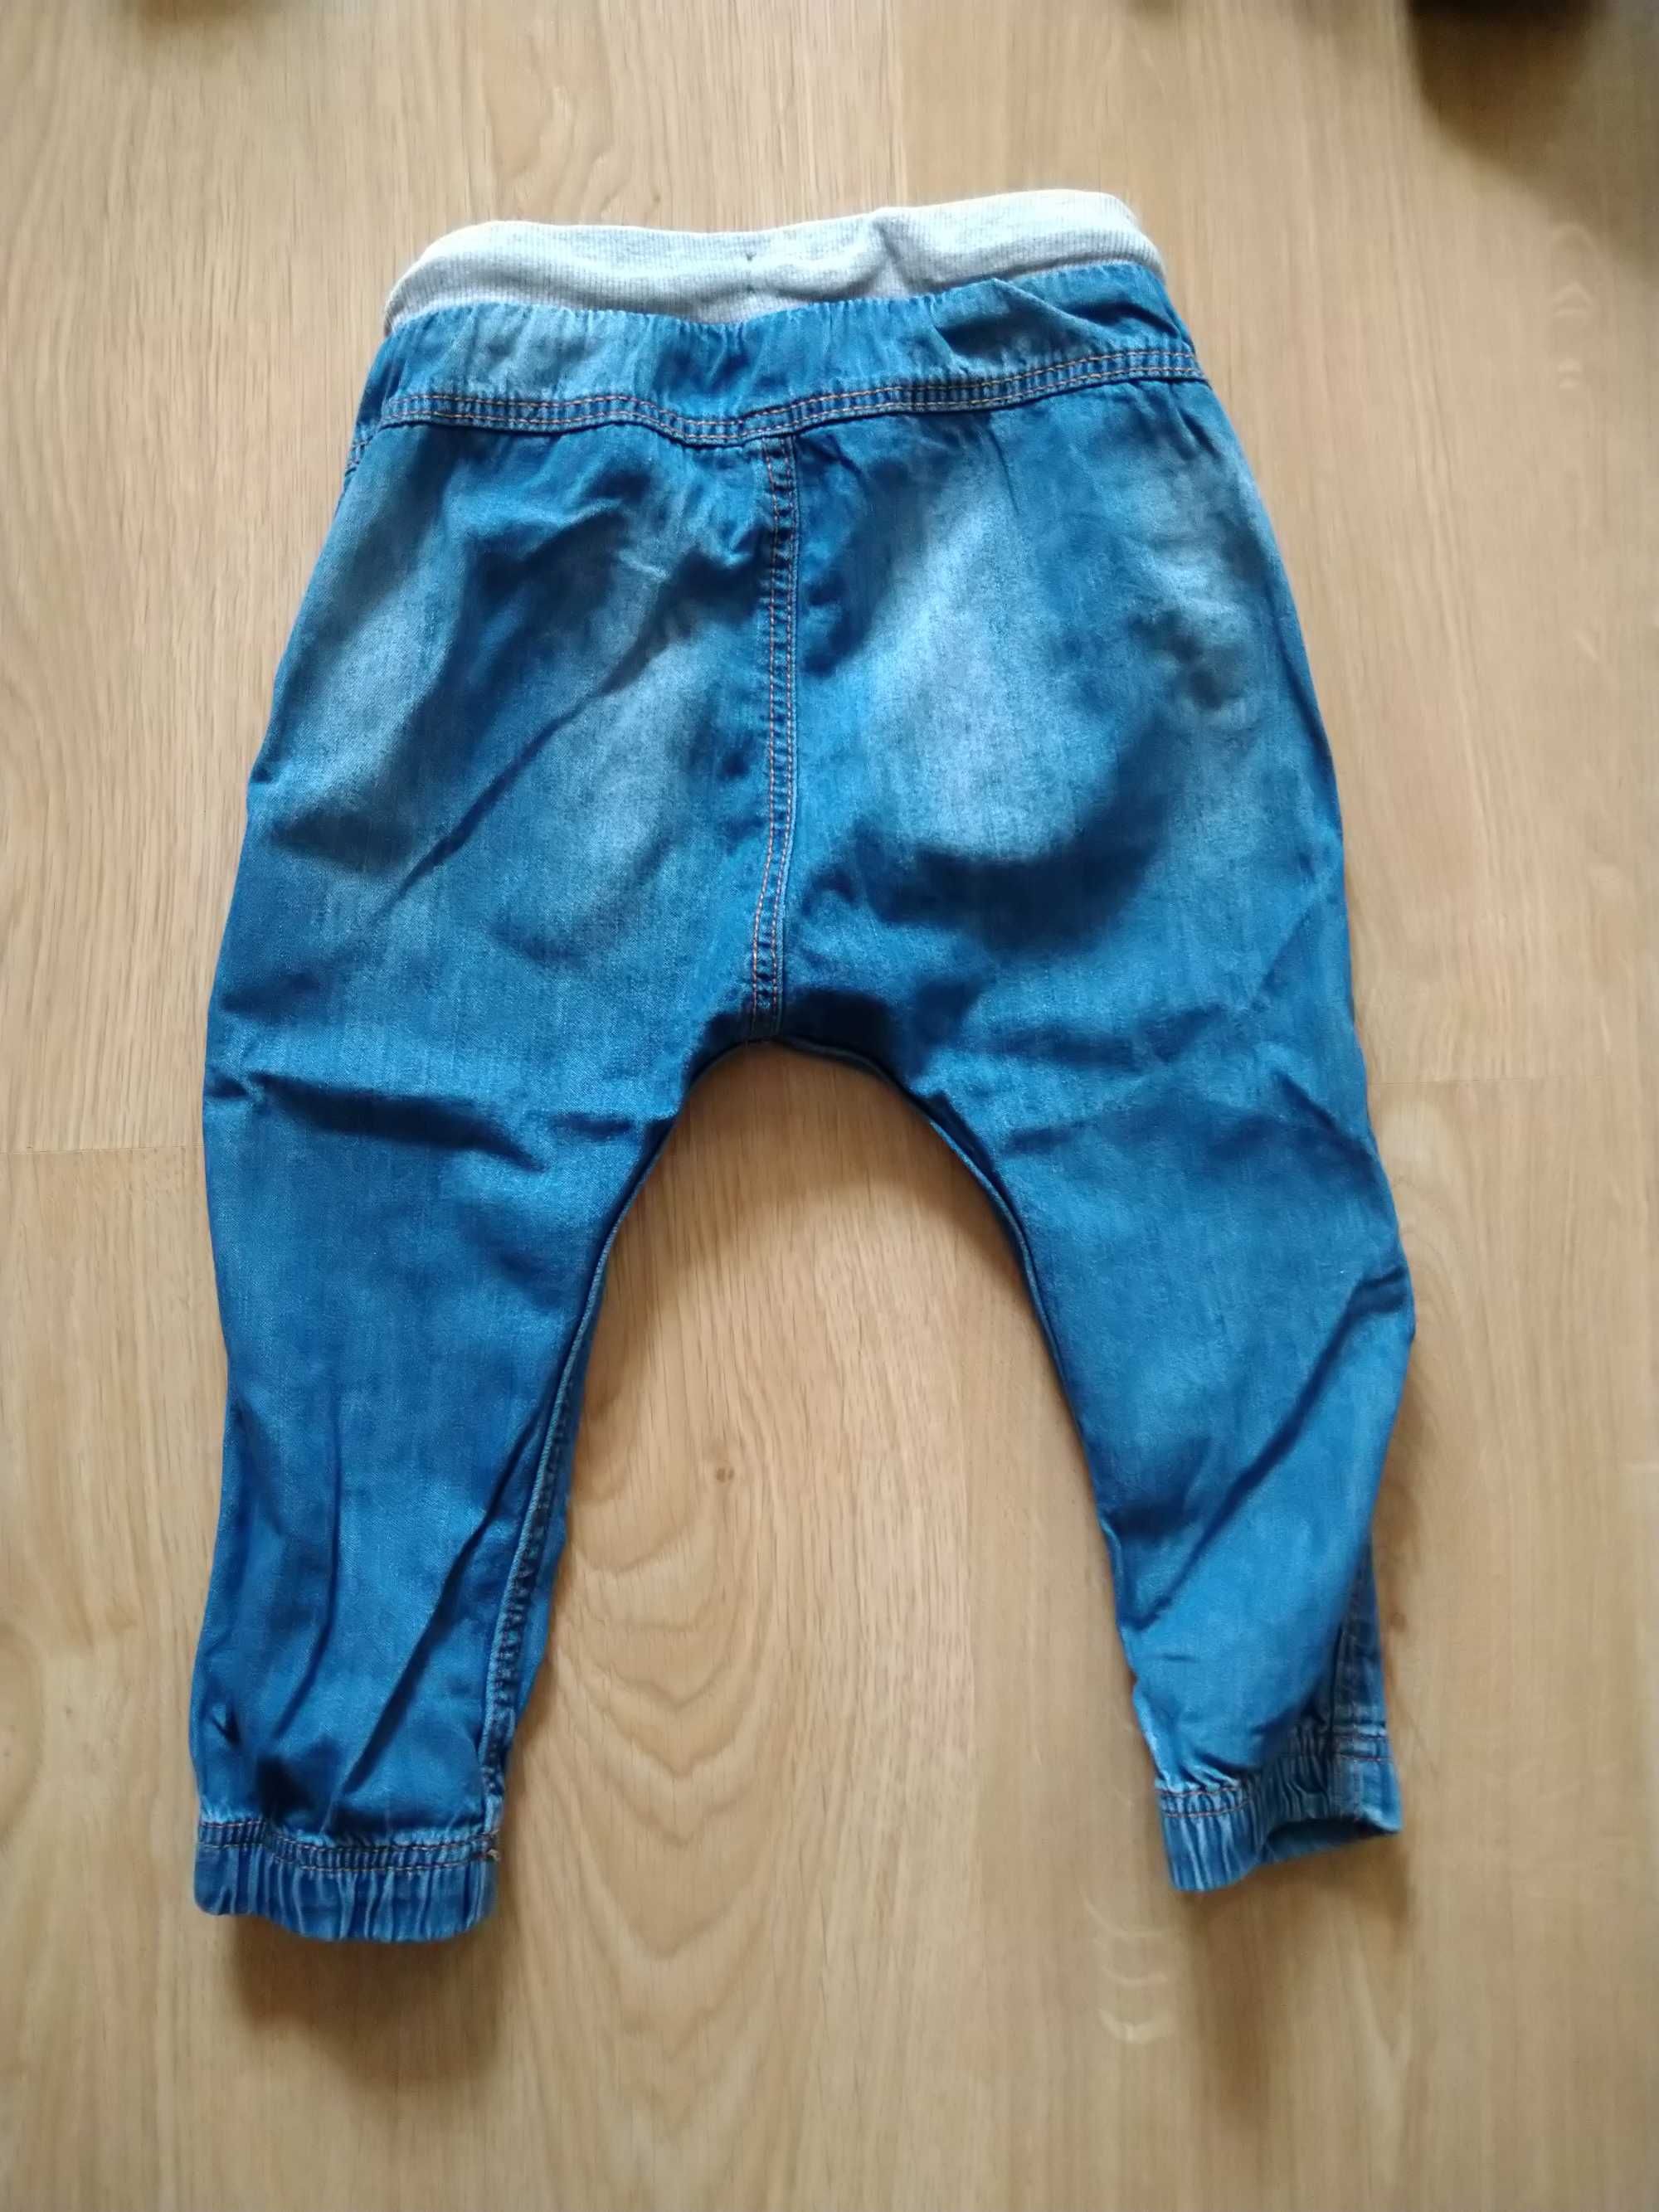 Spodnie jeansy, nie używane tylko wyprane, hm , rozmiar 92